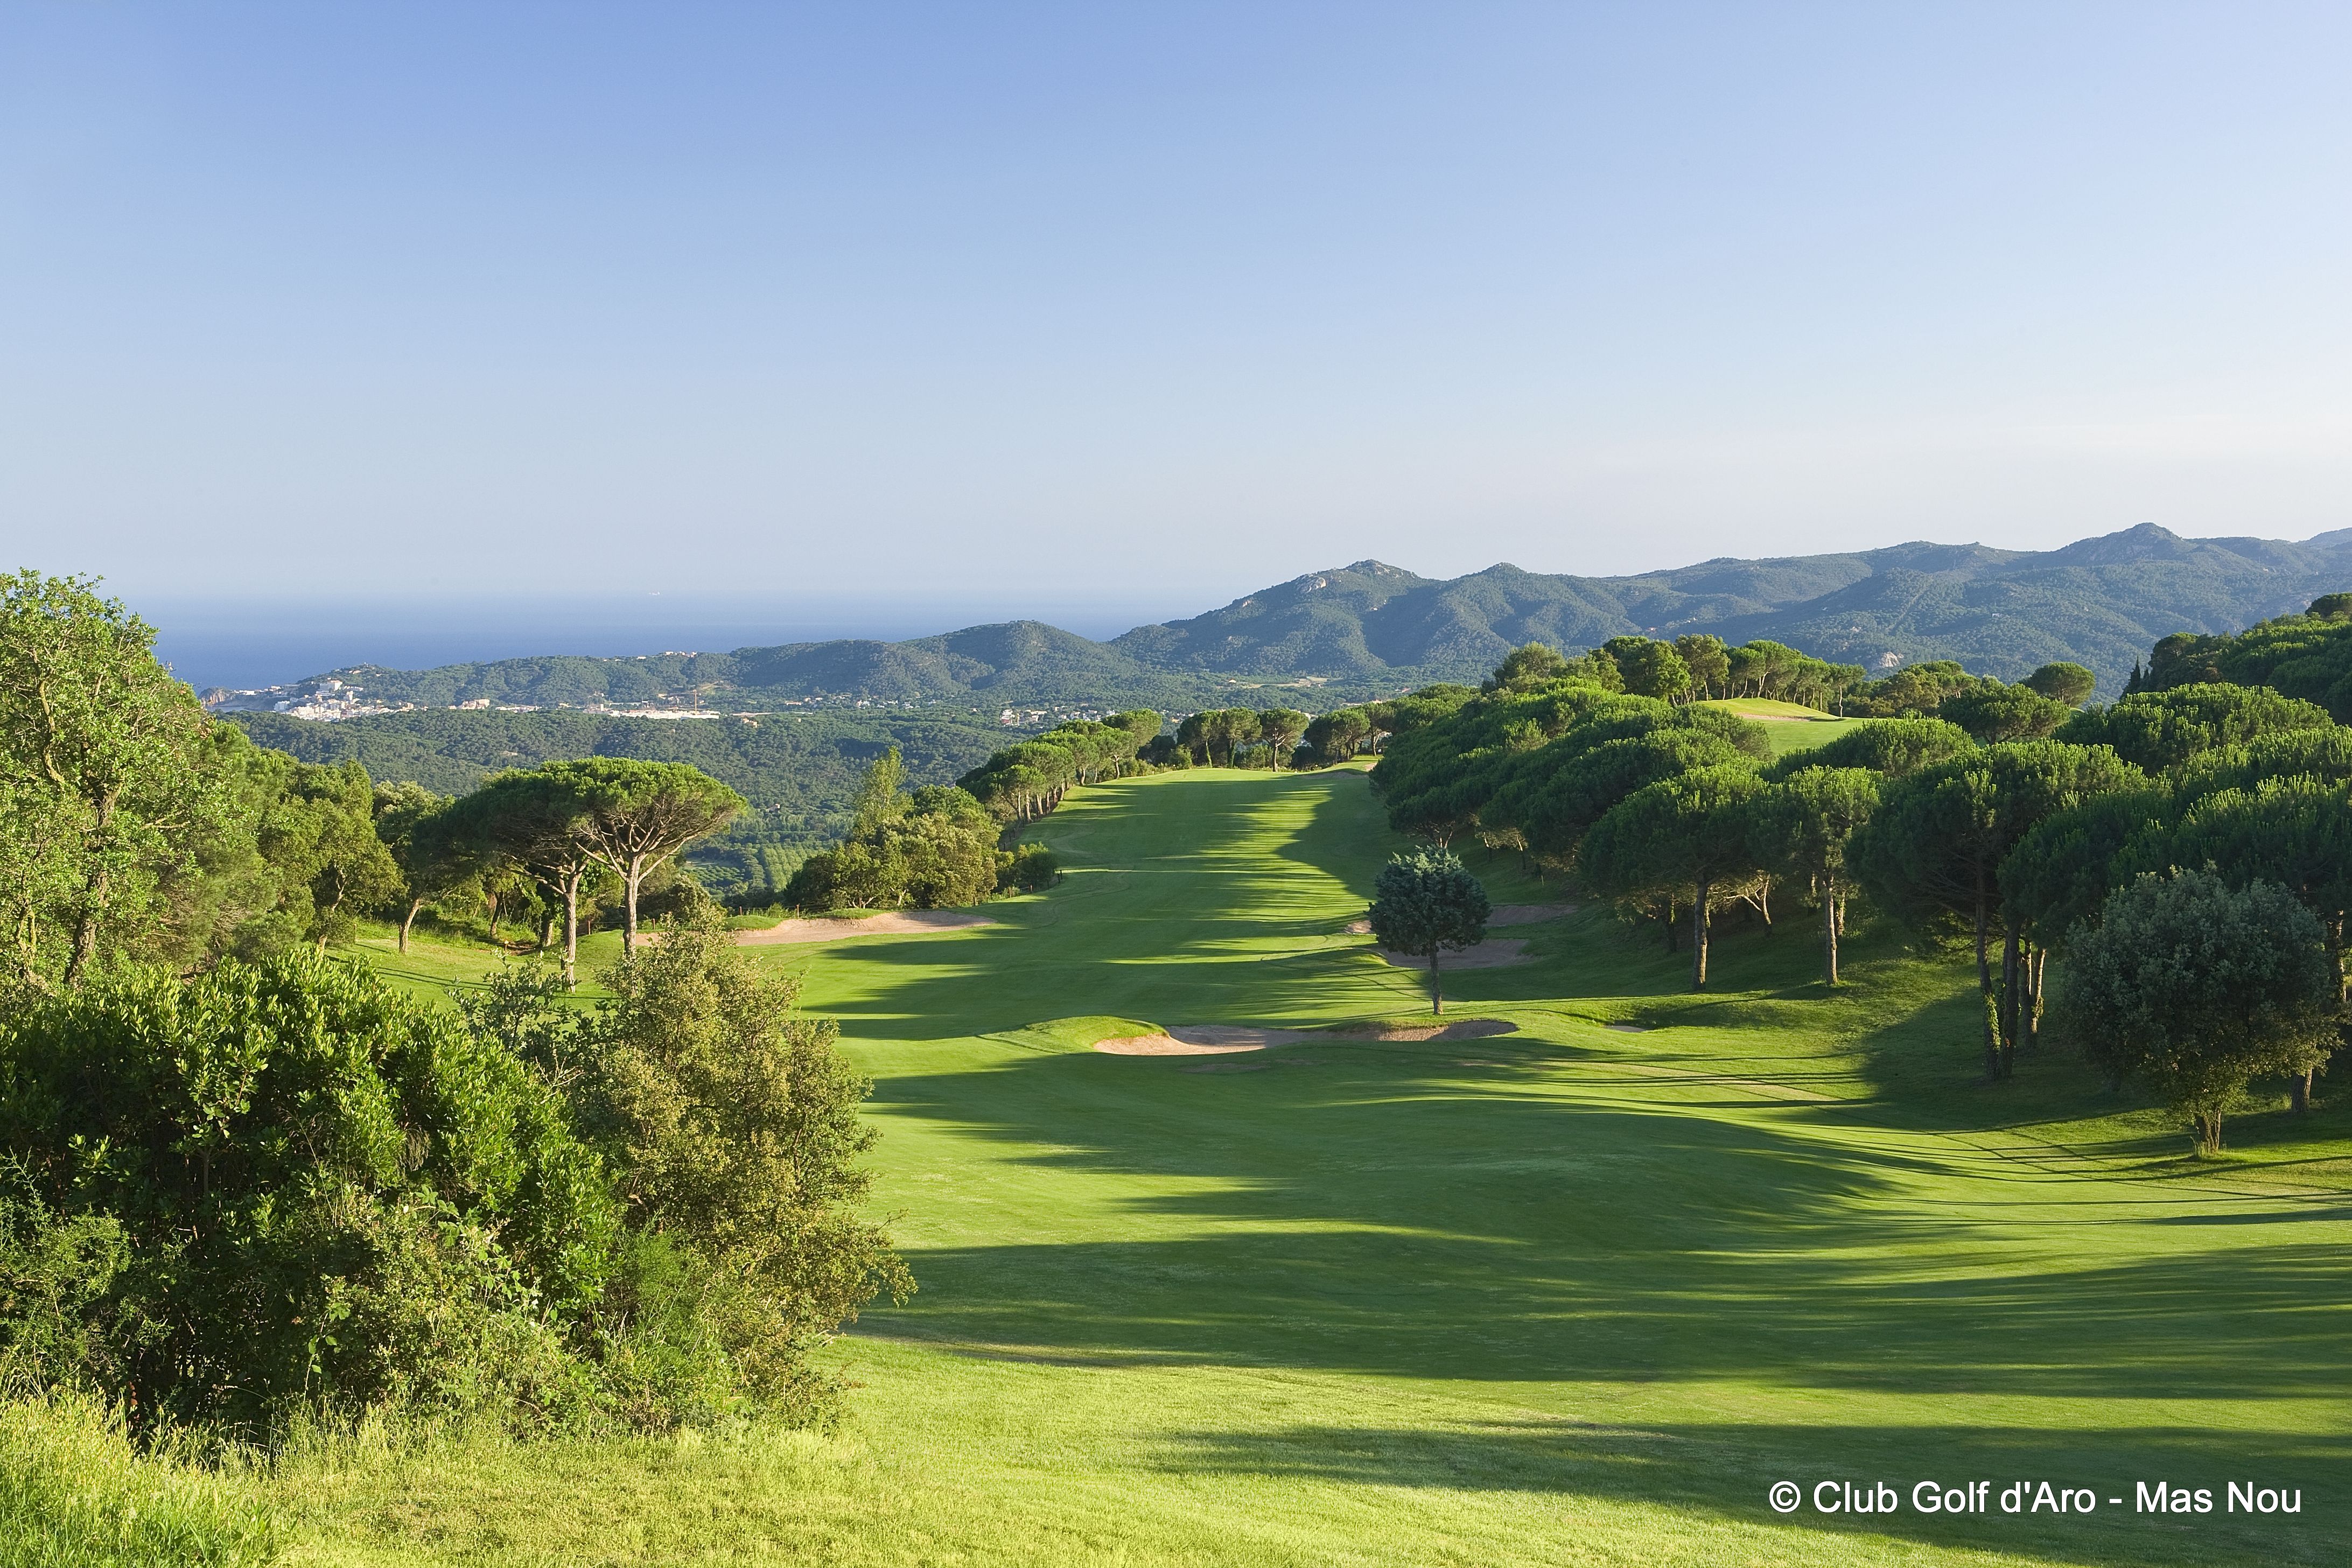 Club Golf d'Aro - Mas Nou, Costa Brava